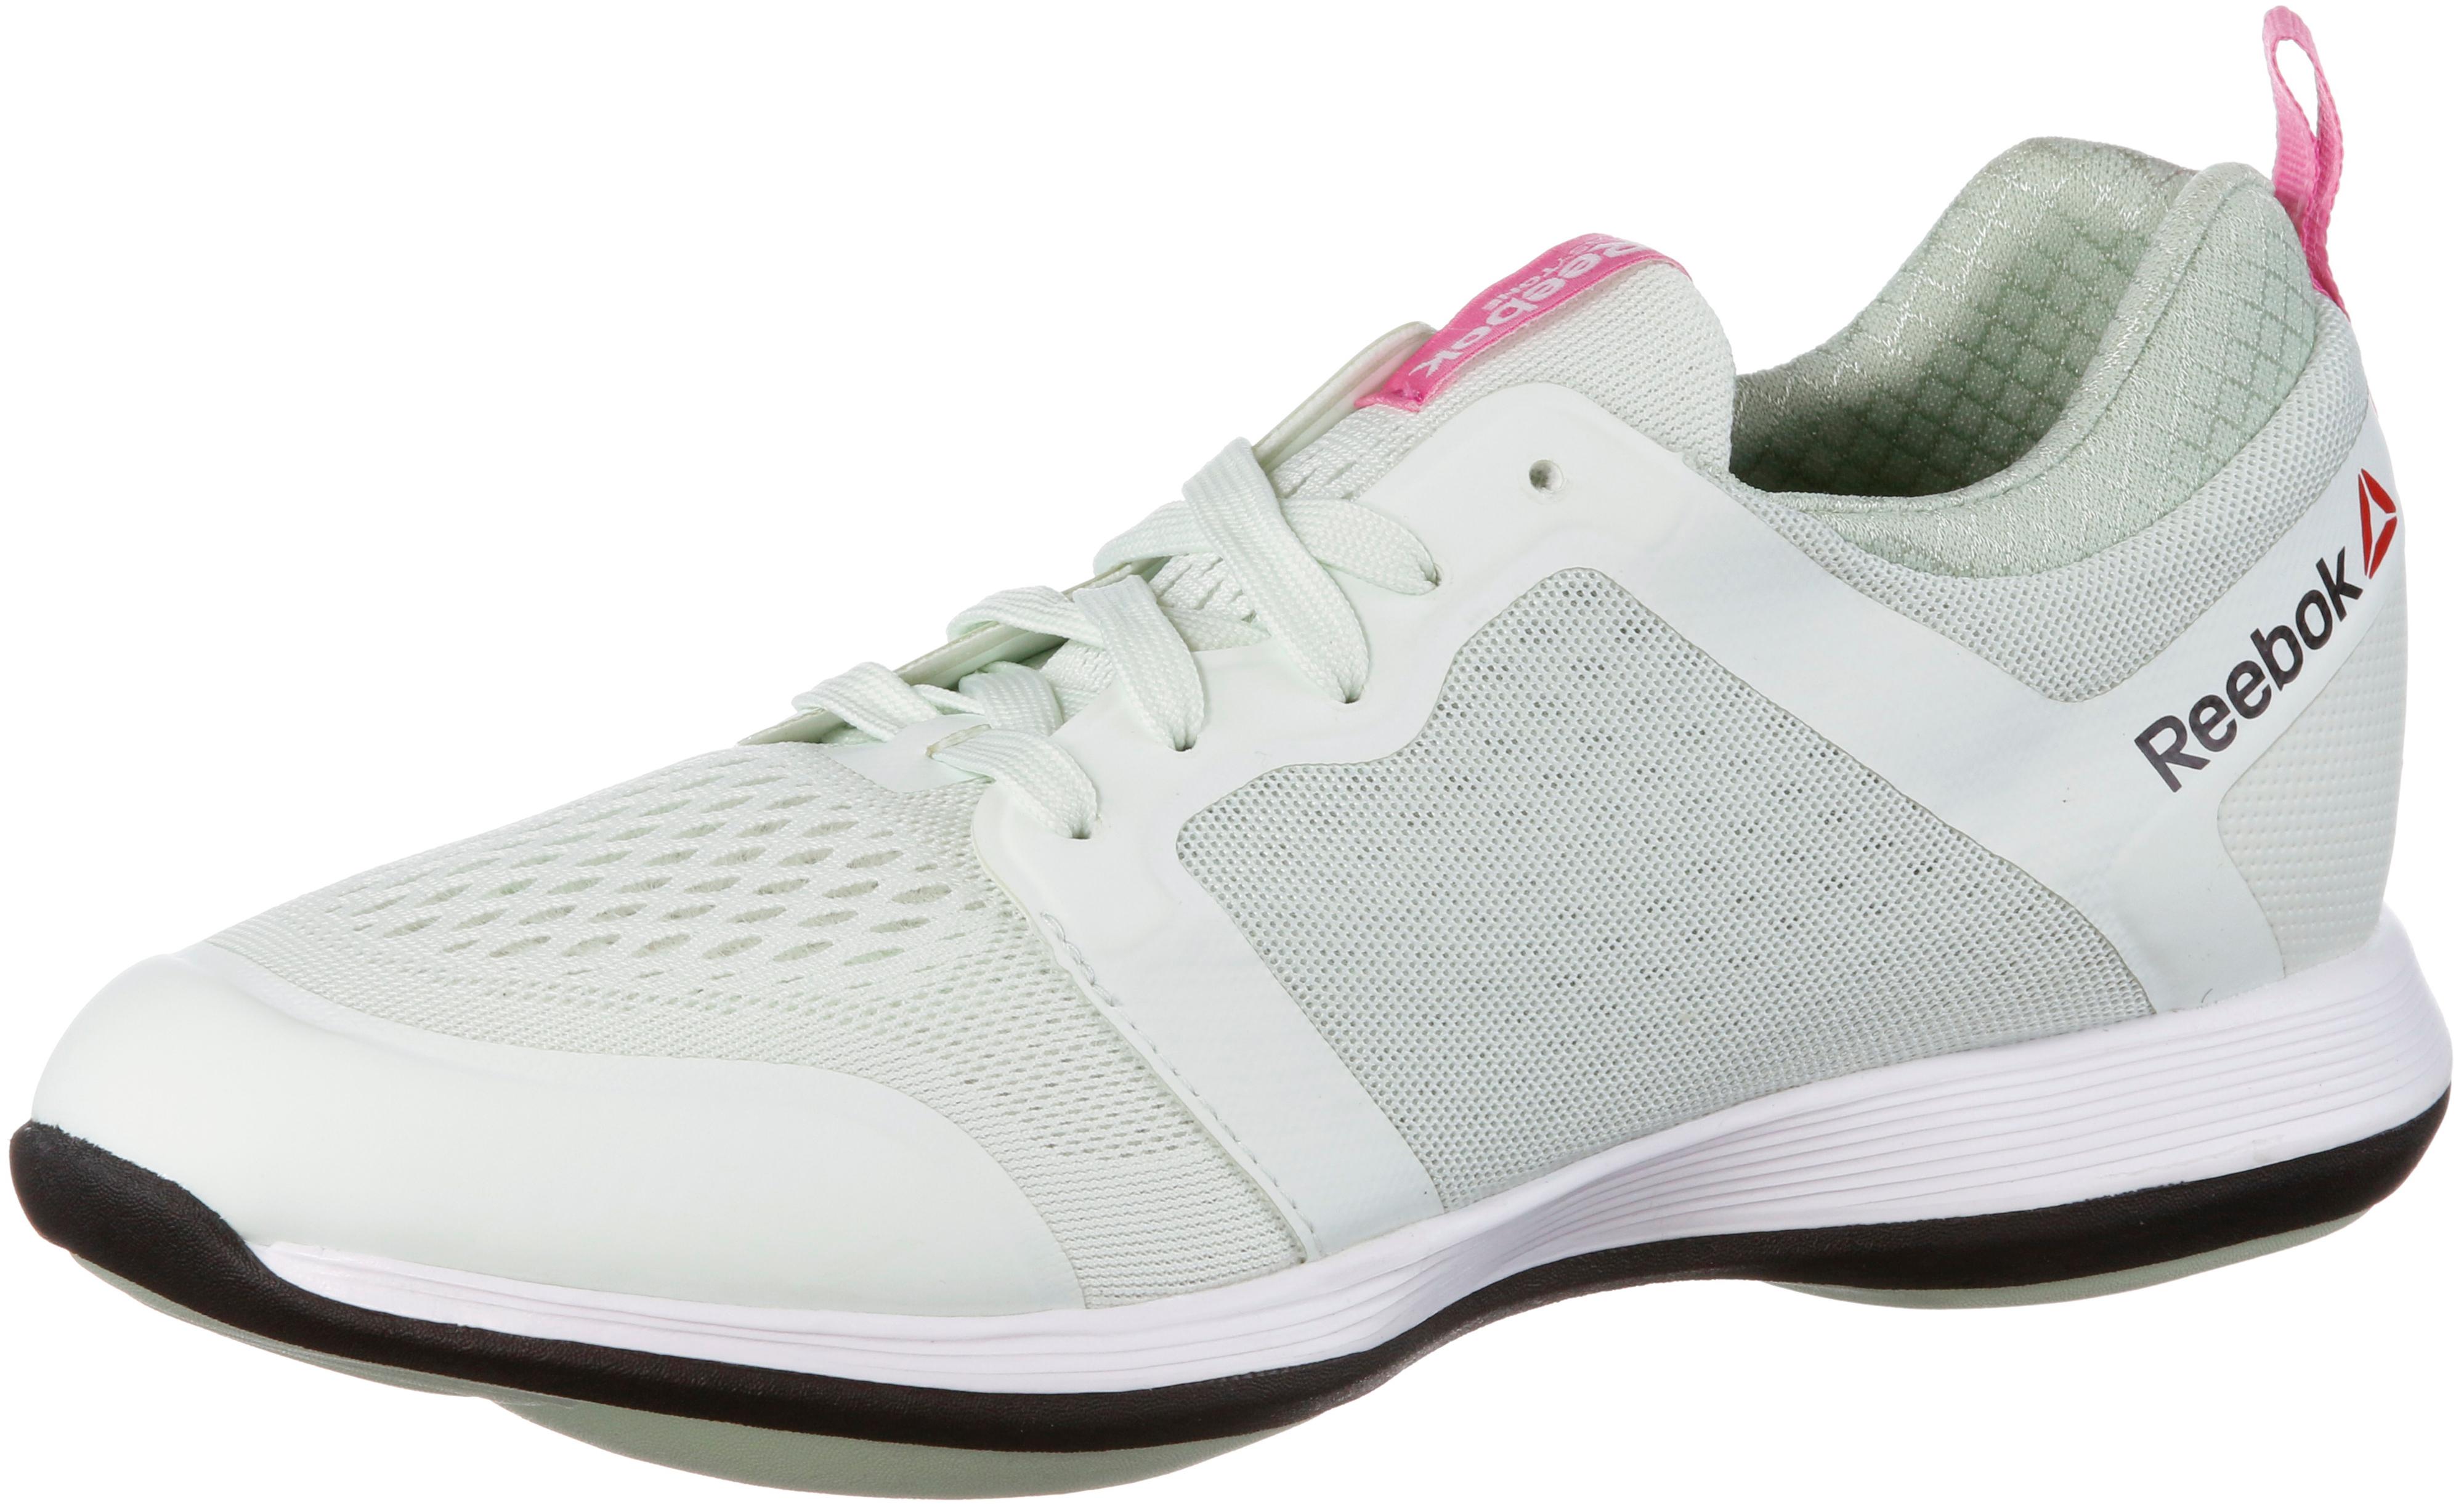 Reebok Easytone 2.0 ATH STYLITE Walkingschuhe Damen weiß/mint im Online  Shop von SportScheck kaufen